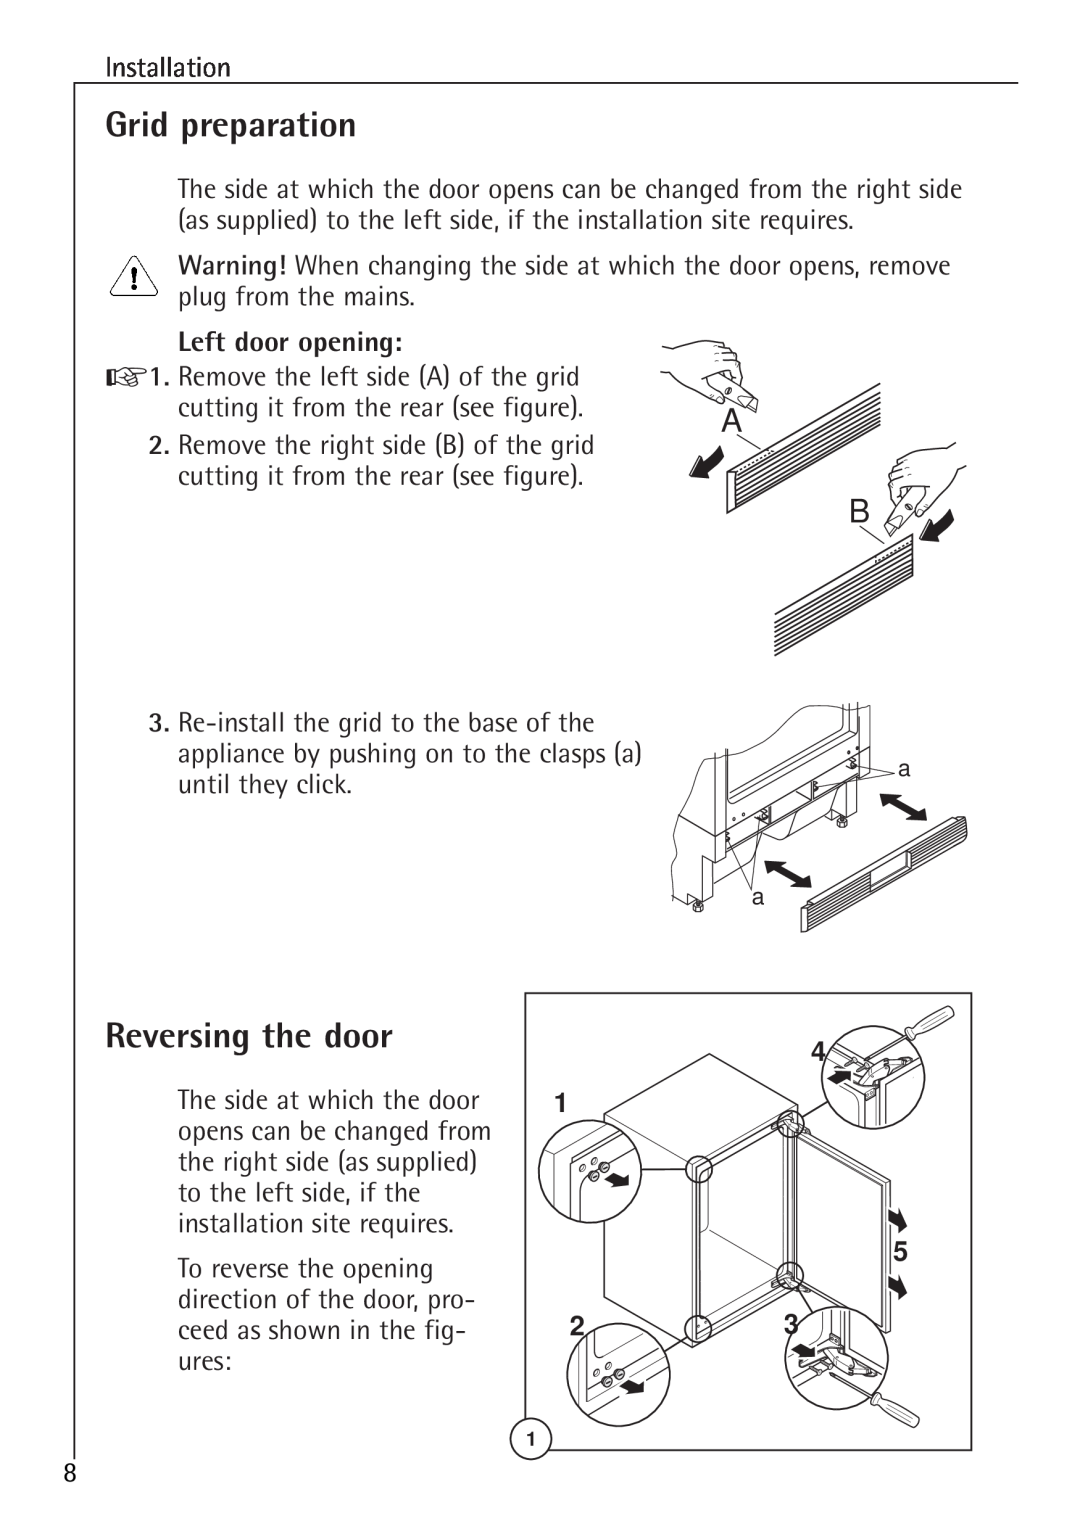 Electrolux 86000 i installation instructions Grid preparation, Reversing the door, Left door opening 